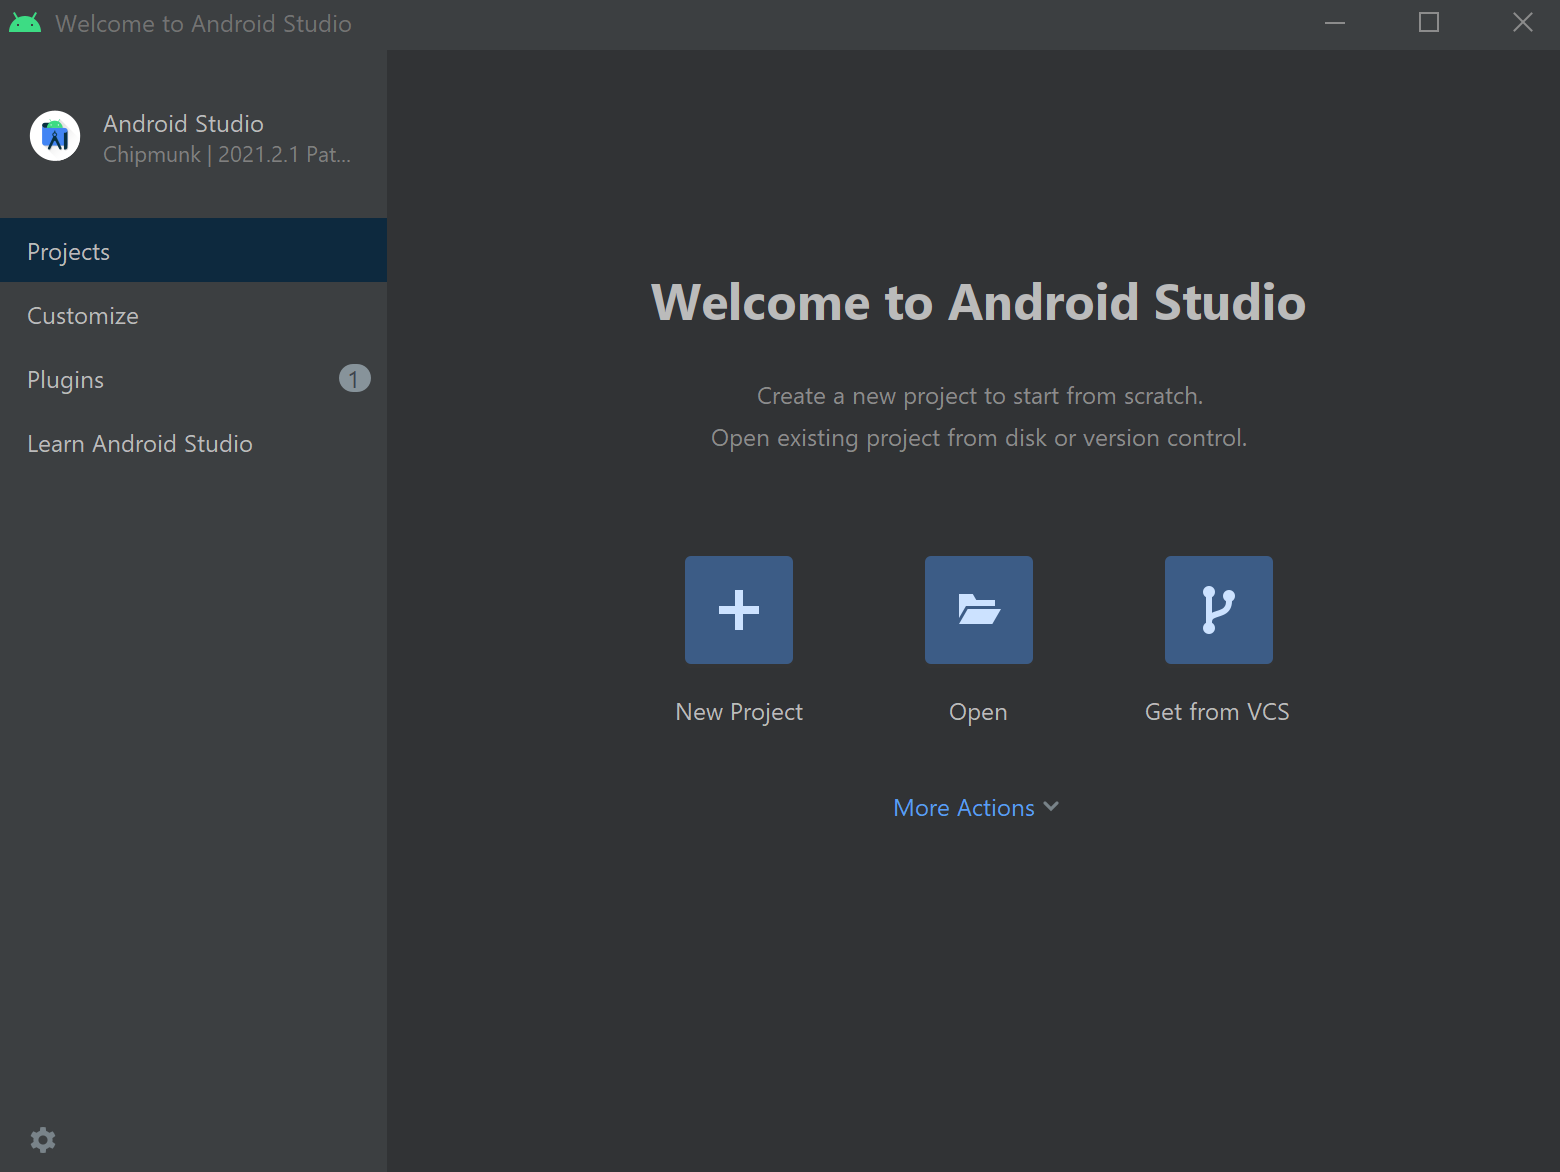 Captura de pantalla que muestra las opciones para abrir o crear nuevos proyectos.